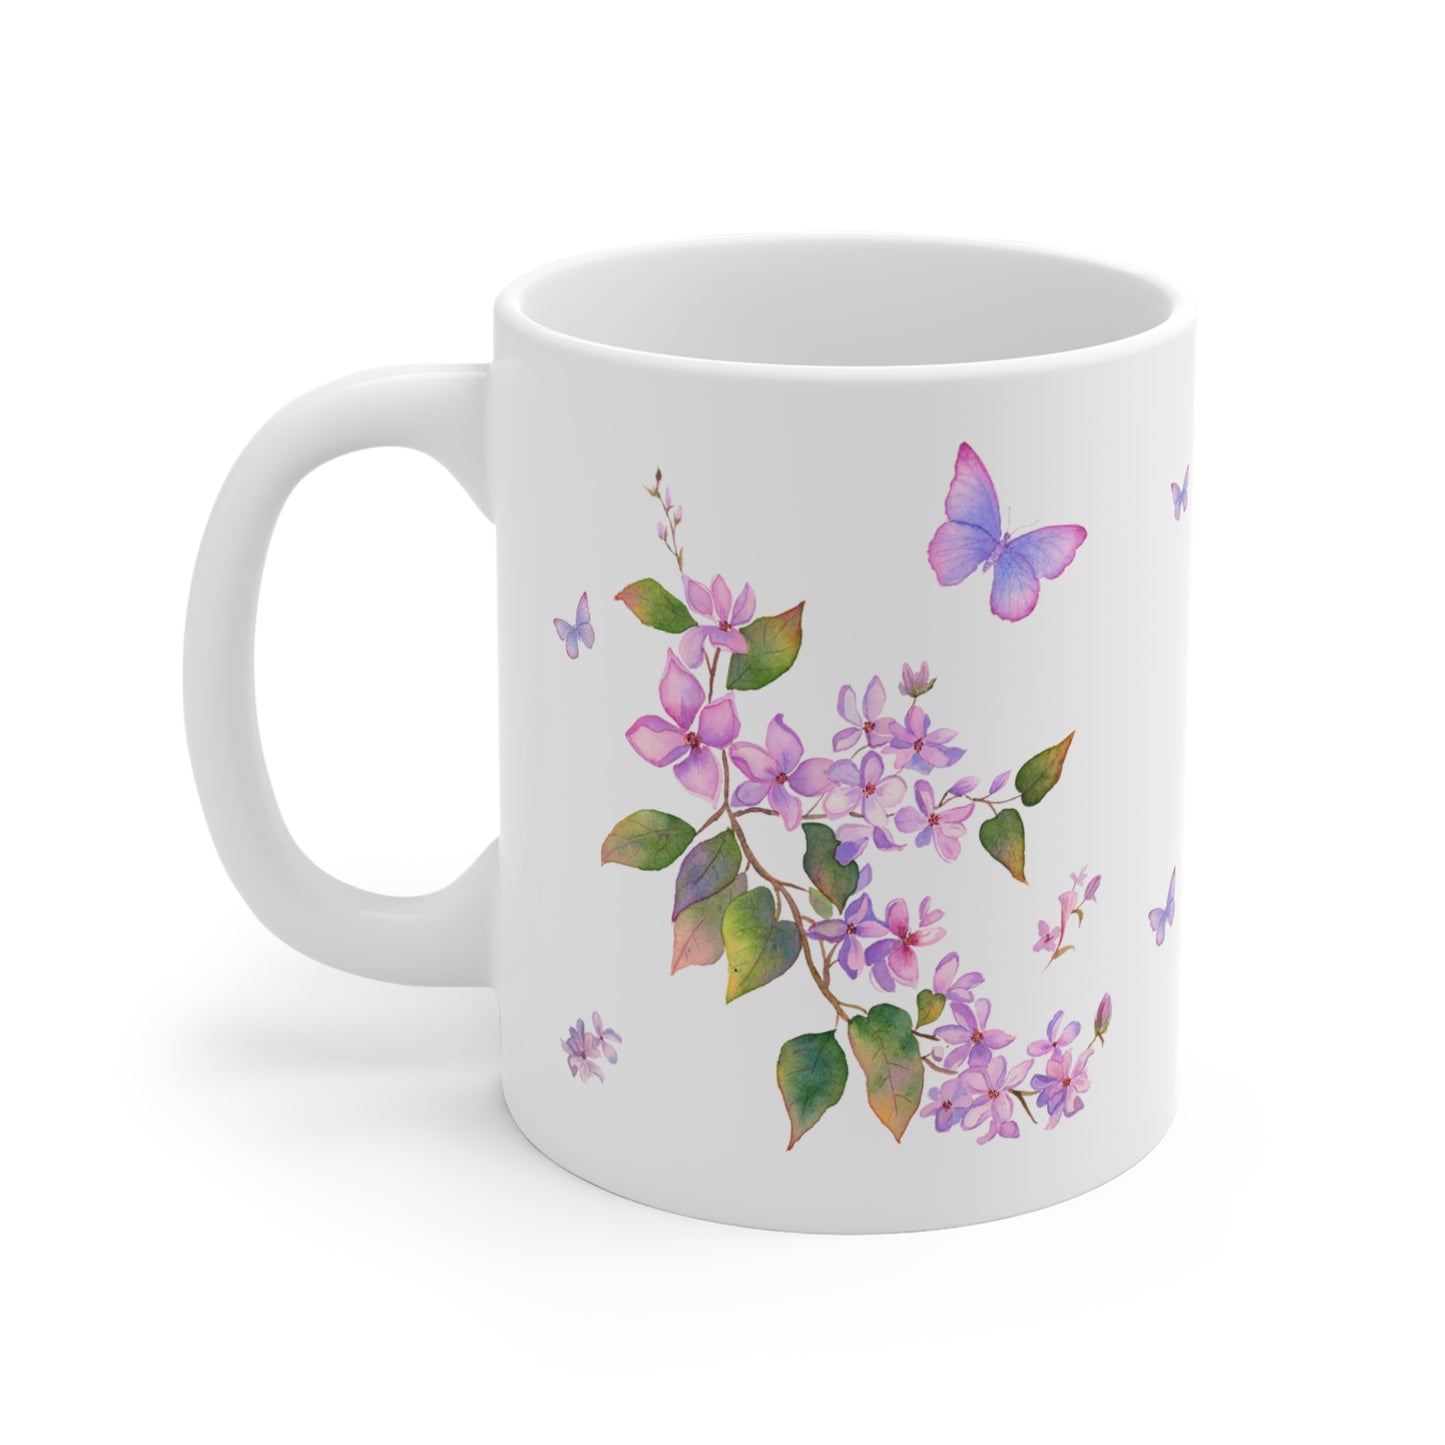 Mug/Tasse personnalisé avec prénom thème Lilas vintage / cadeau fête des mères  / Cadeau Personnalisé, cadeaux